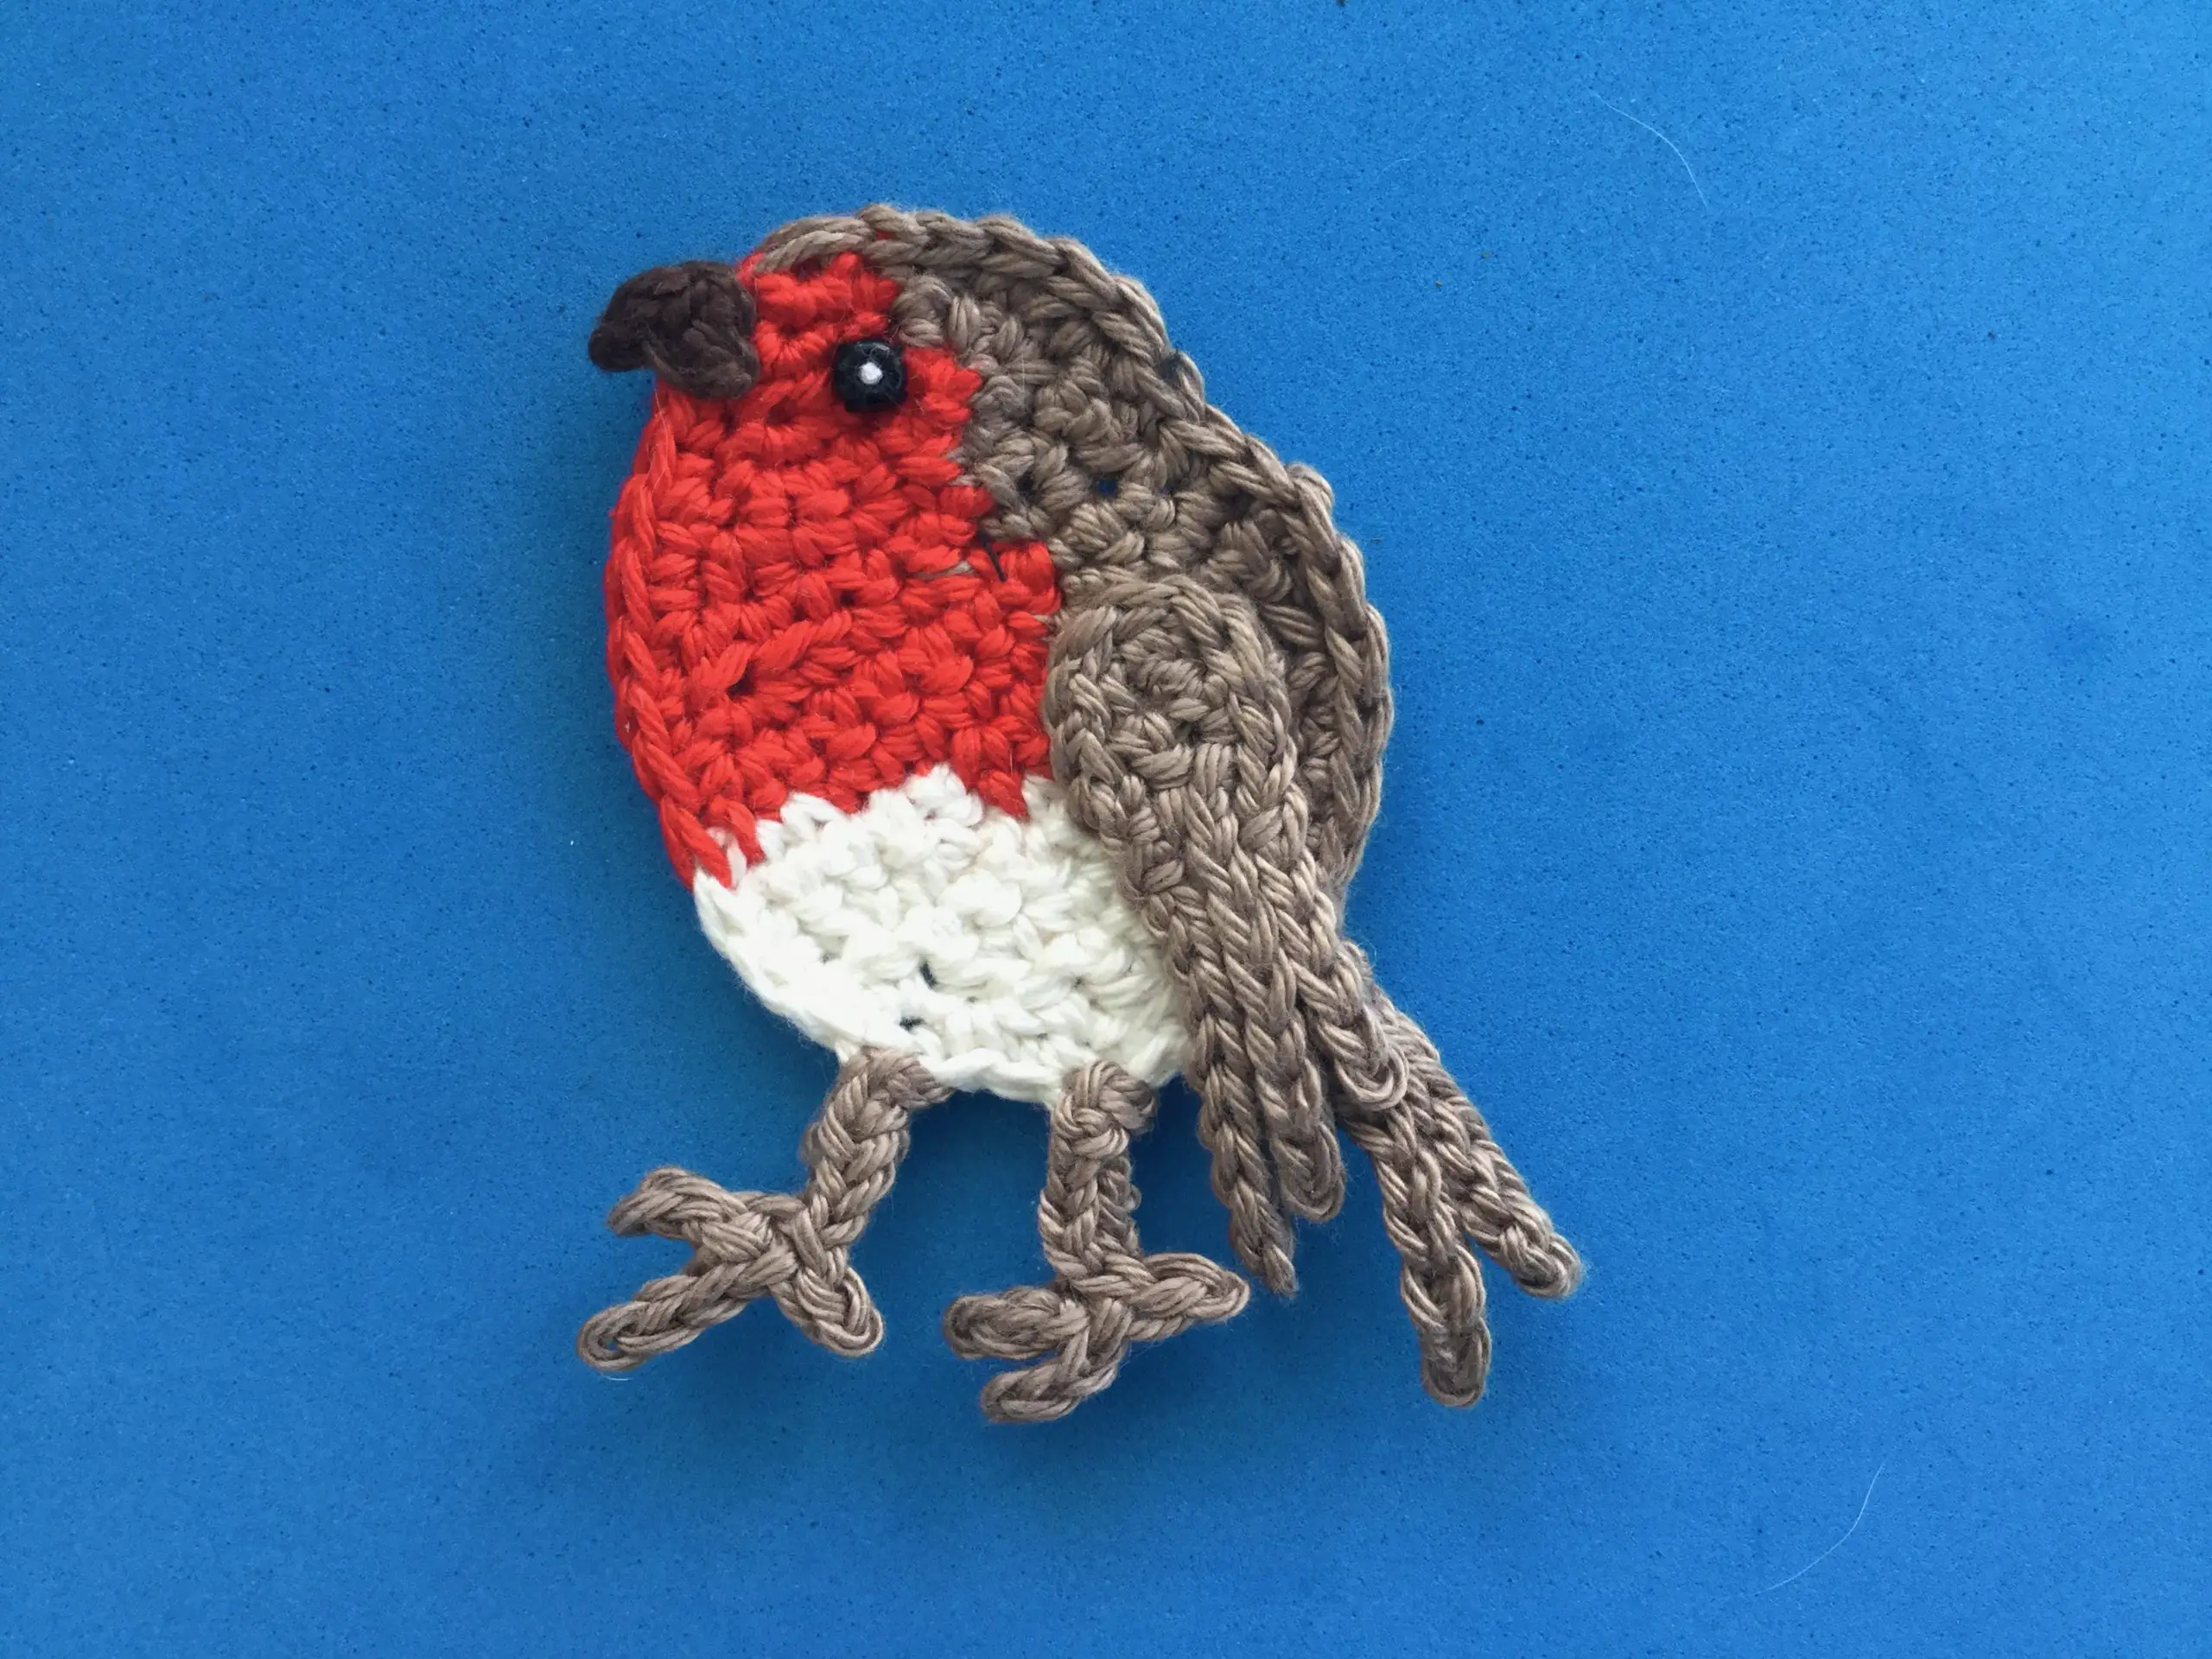 Finished crochet robin 4 ply landscape